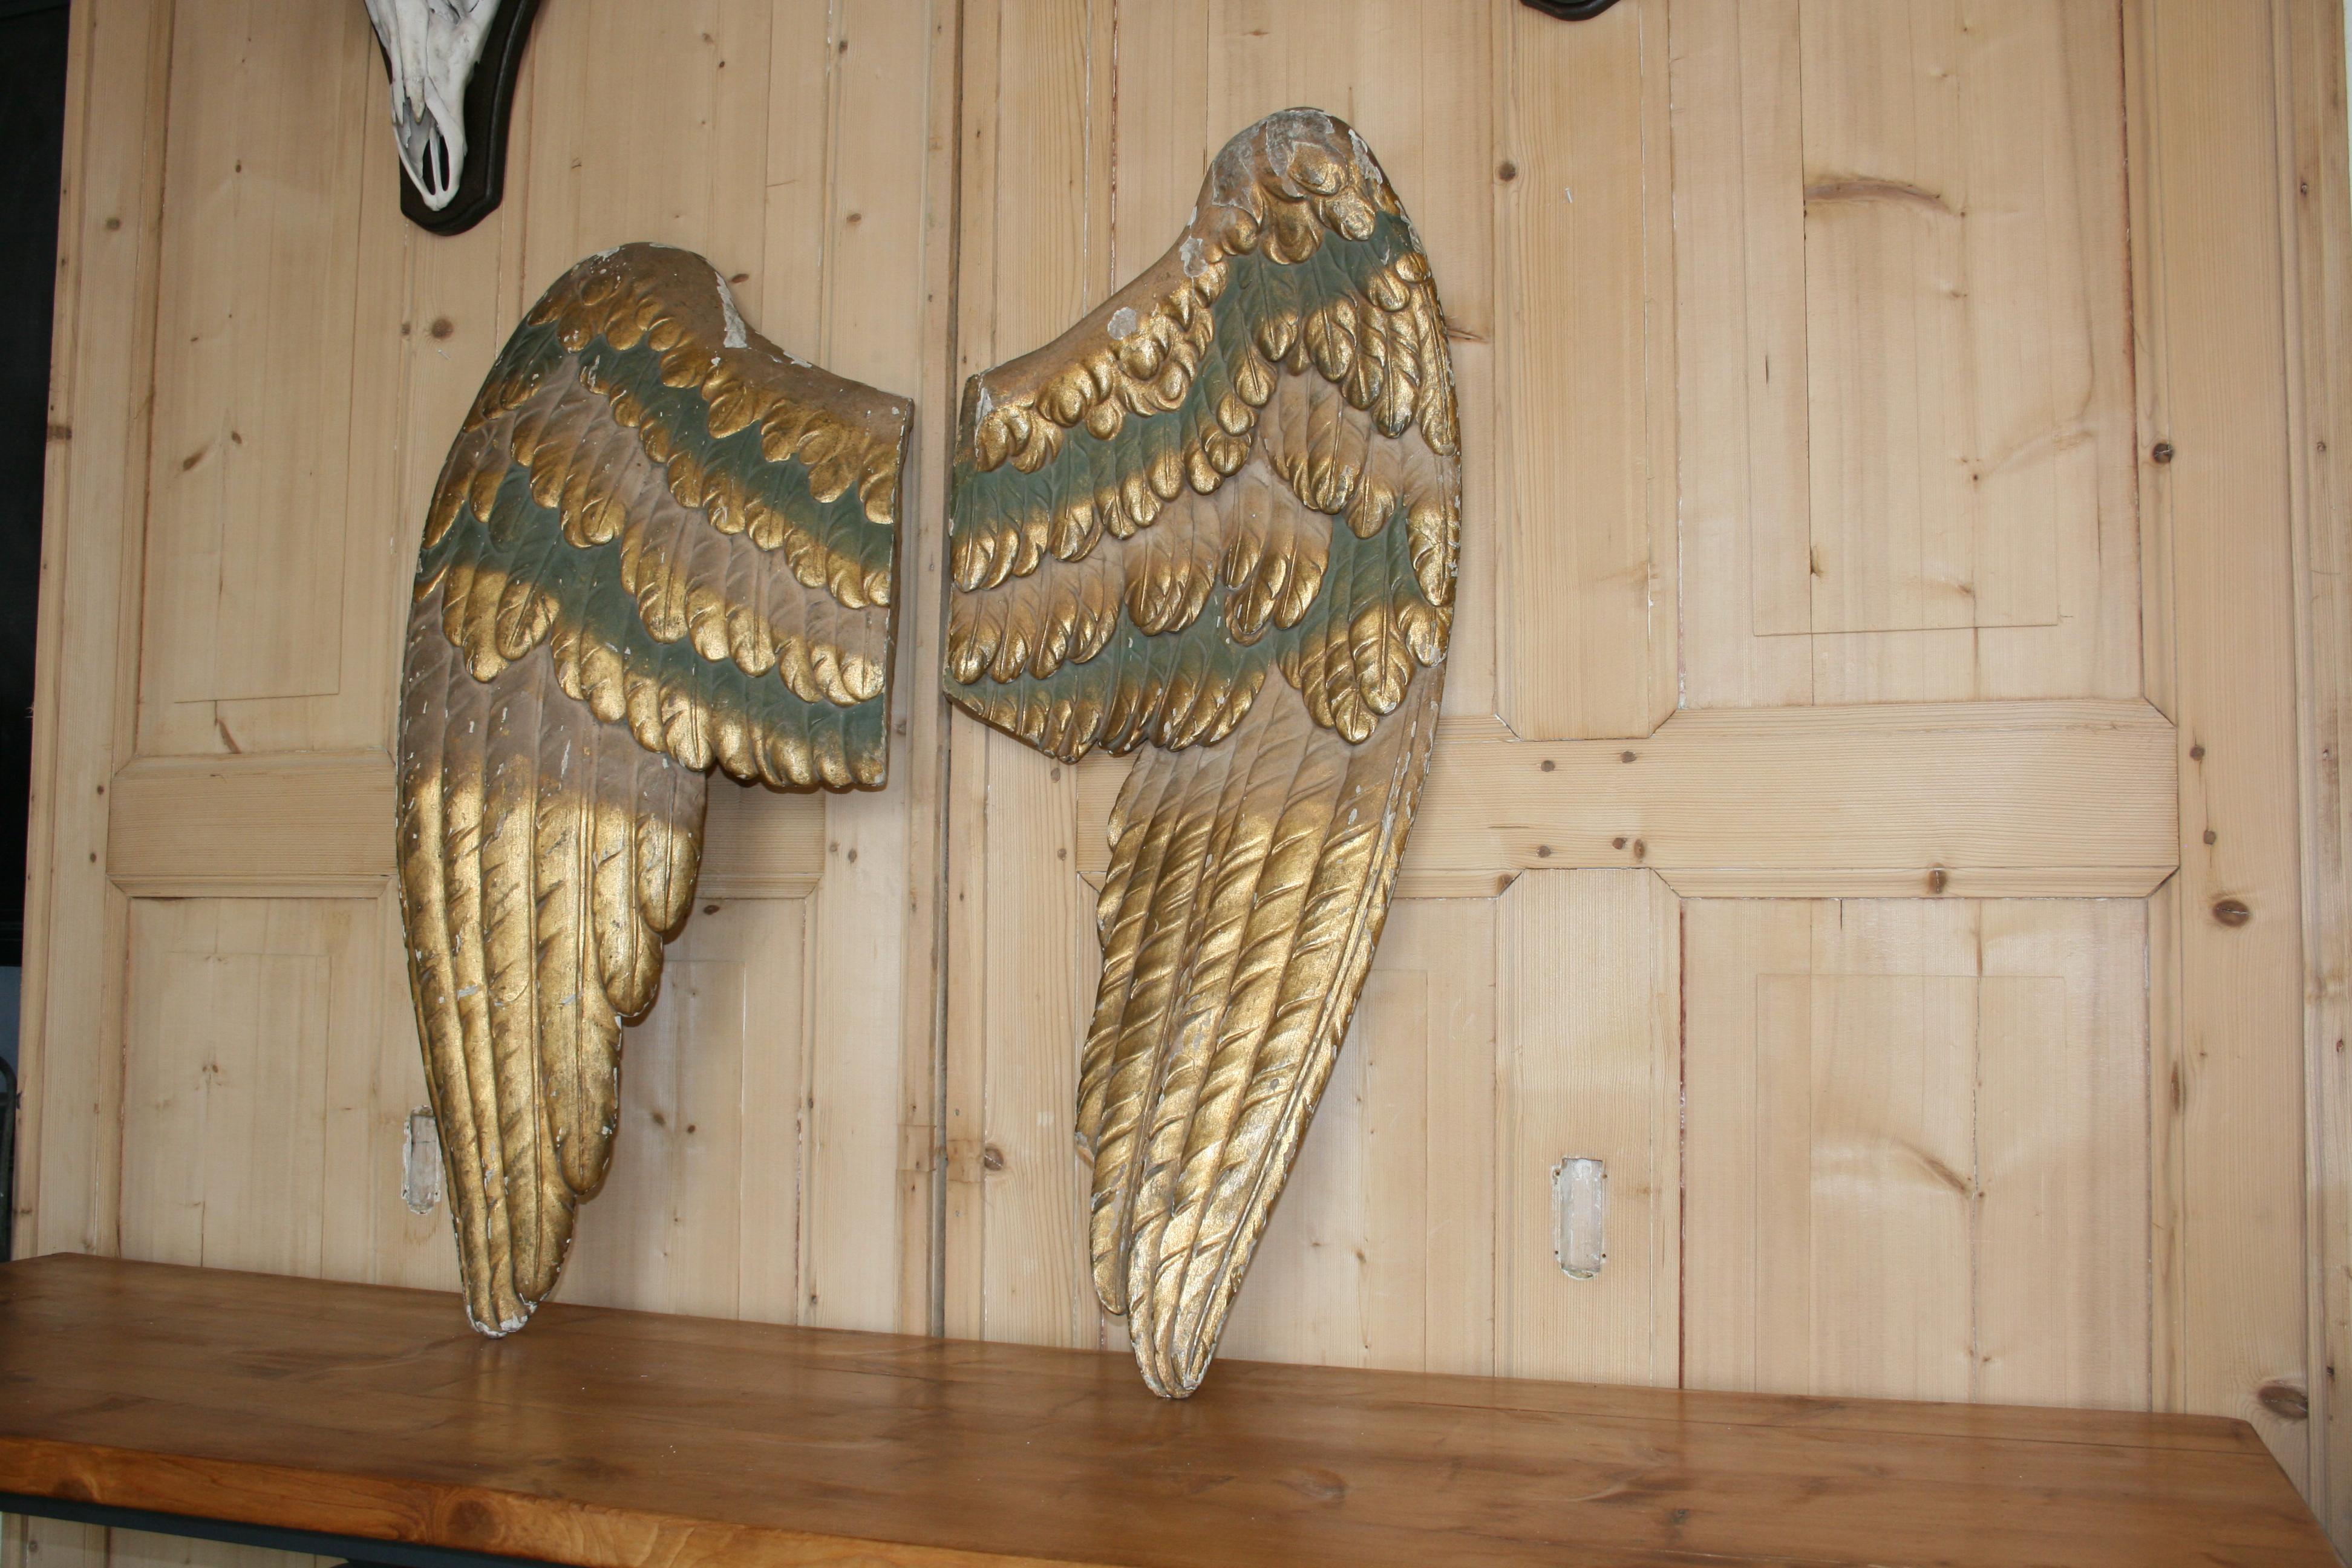 wooden angel wings